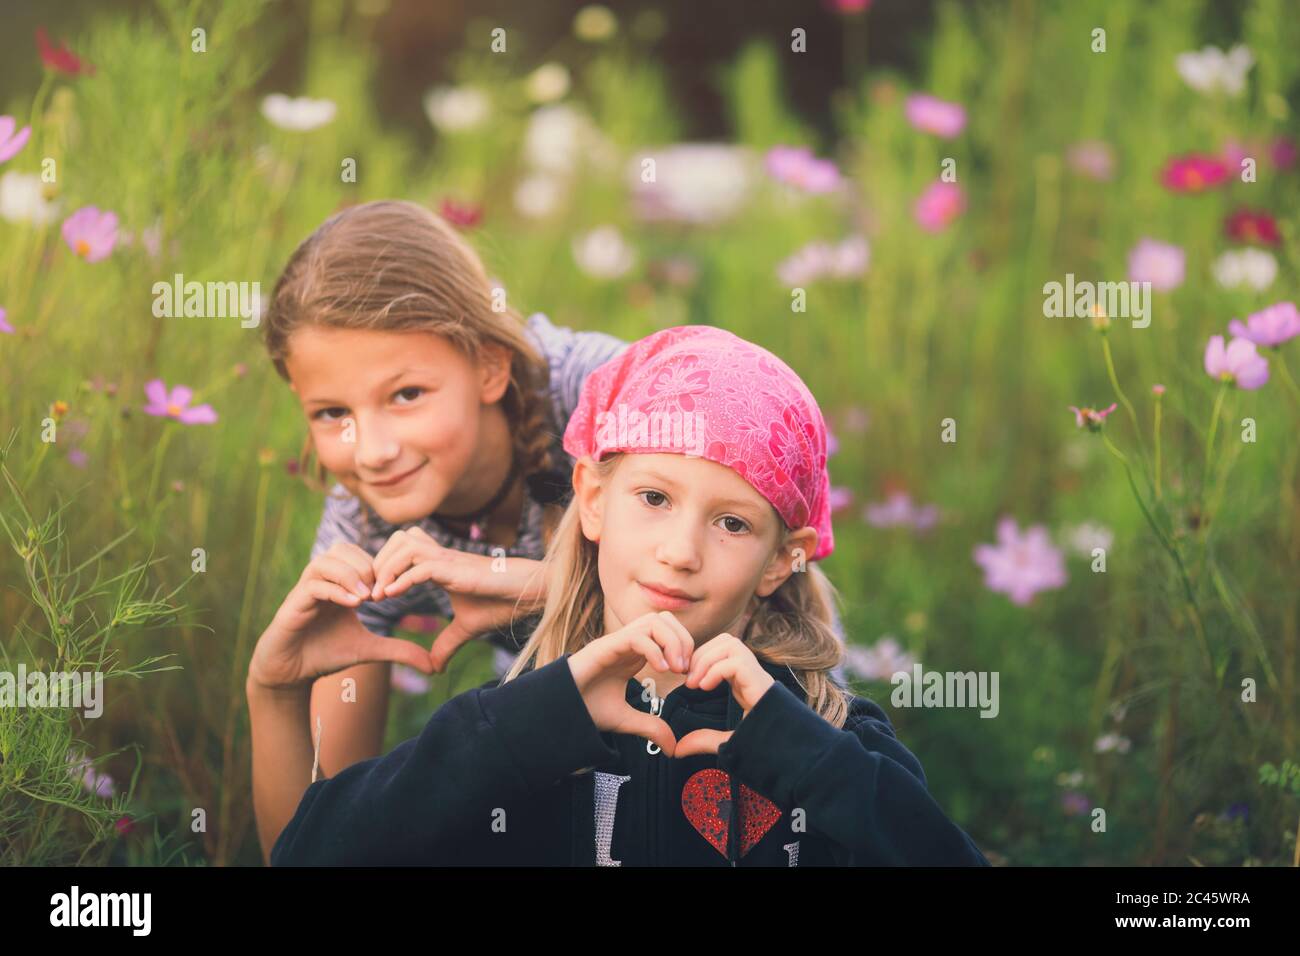 Zwei junge Mädchen mit Herzform Zeichen mit Händen in einer wilden Blumenwiese Stockfoto